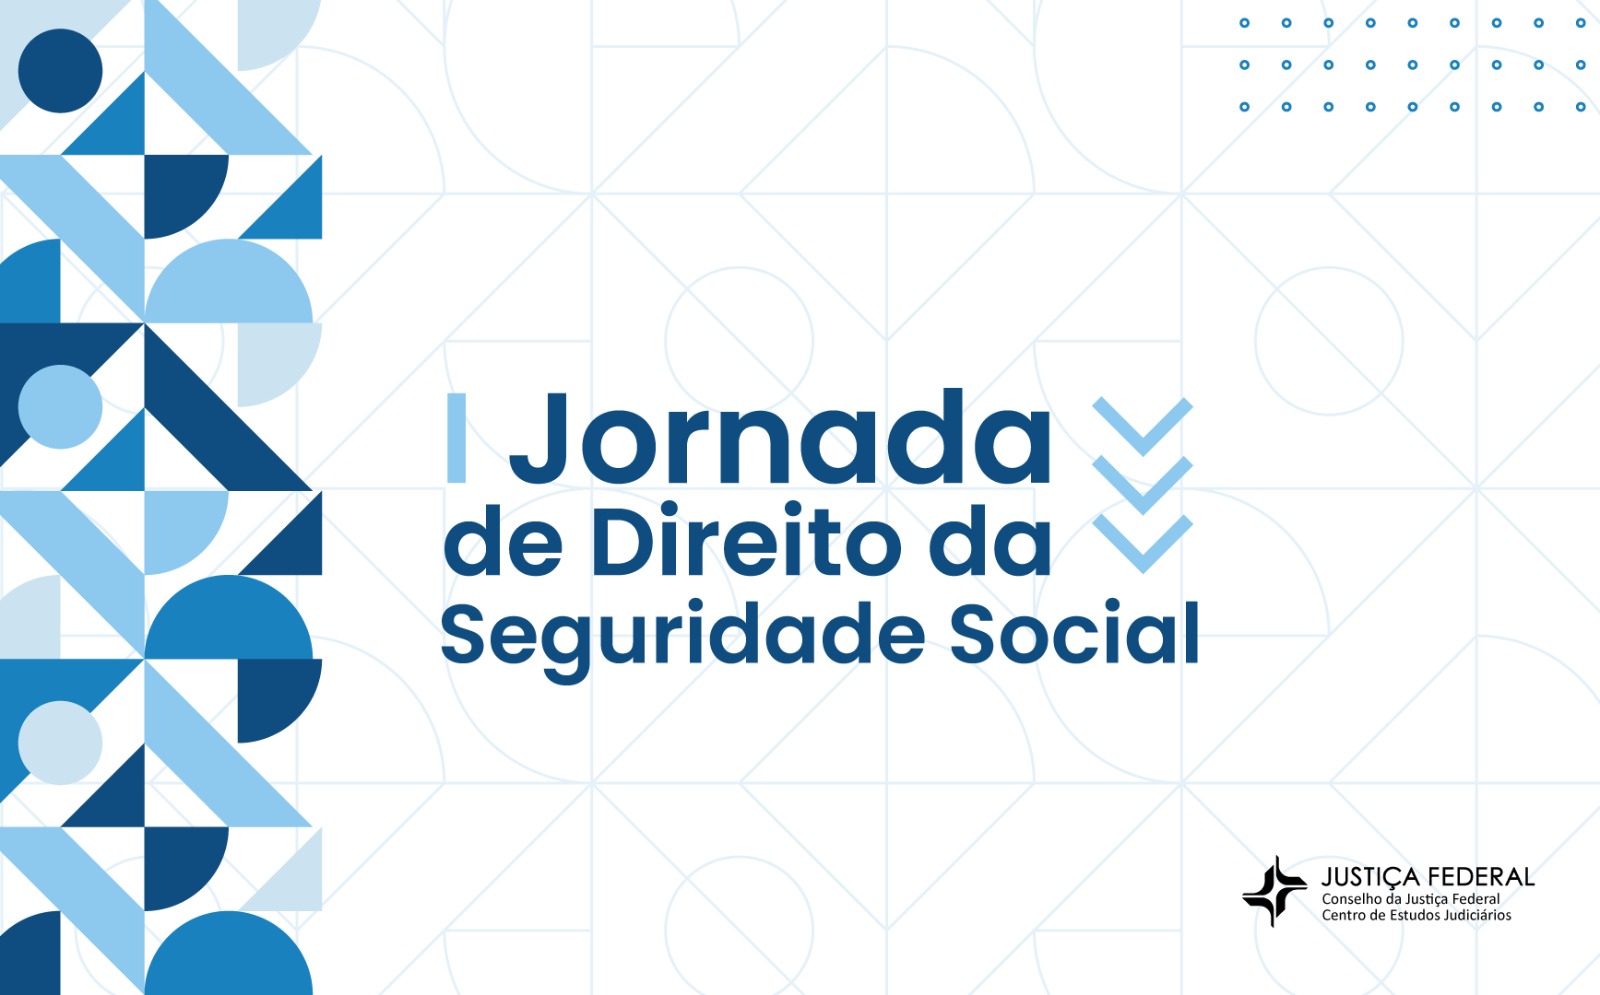 INSTITUCIONAL: I Jornada de Direito da Seguridade Social promovido pelo CJF acontece em junho/23